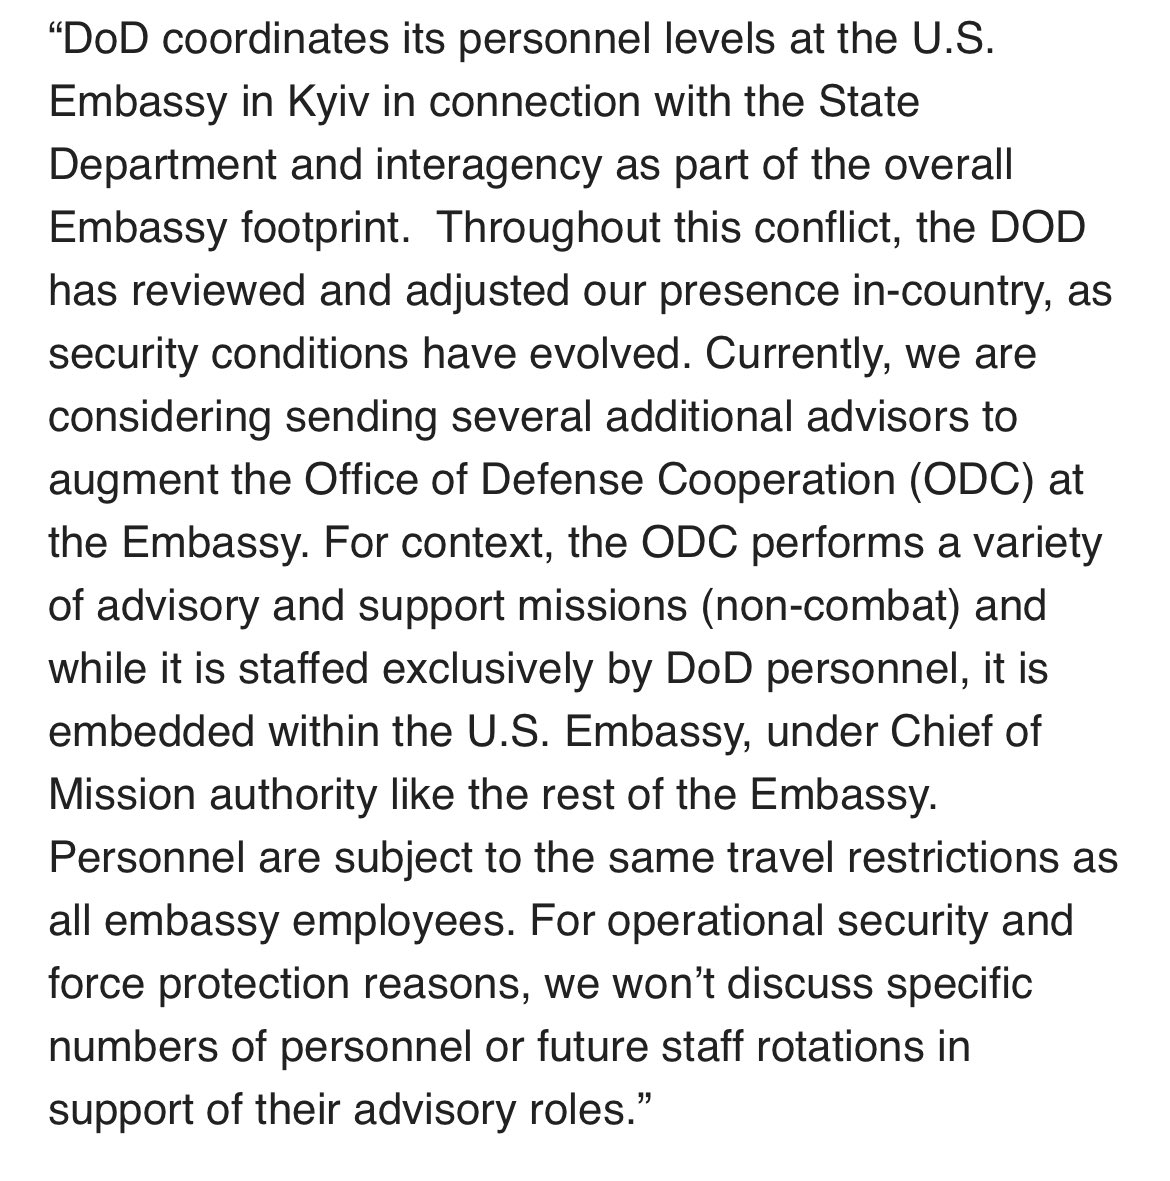 ایالات متحده ممکن است نیروهای بیشتری را به اوکراین بفرستد تا مشاور مستقر در سفارت باشند، نه درگیر جنگ. از @PentagonPresSec تا VOA- در حال حاضر، ما در حال بررسی ارسال چند مشاور اضافی برای تقویت دفتر Def. Coop در سفارت هستیم. مشاوره و پشتیبانی